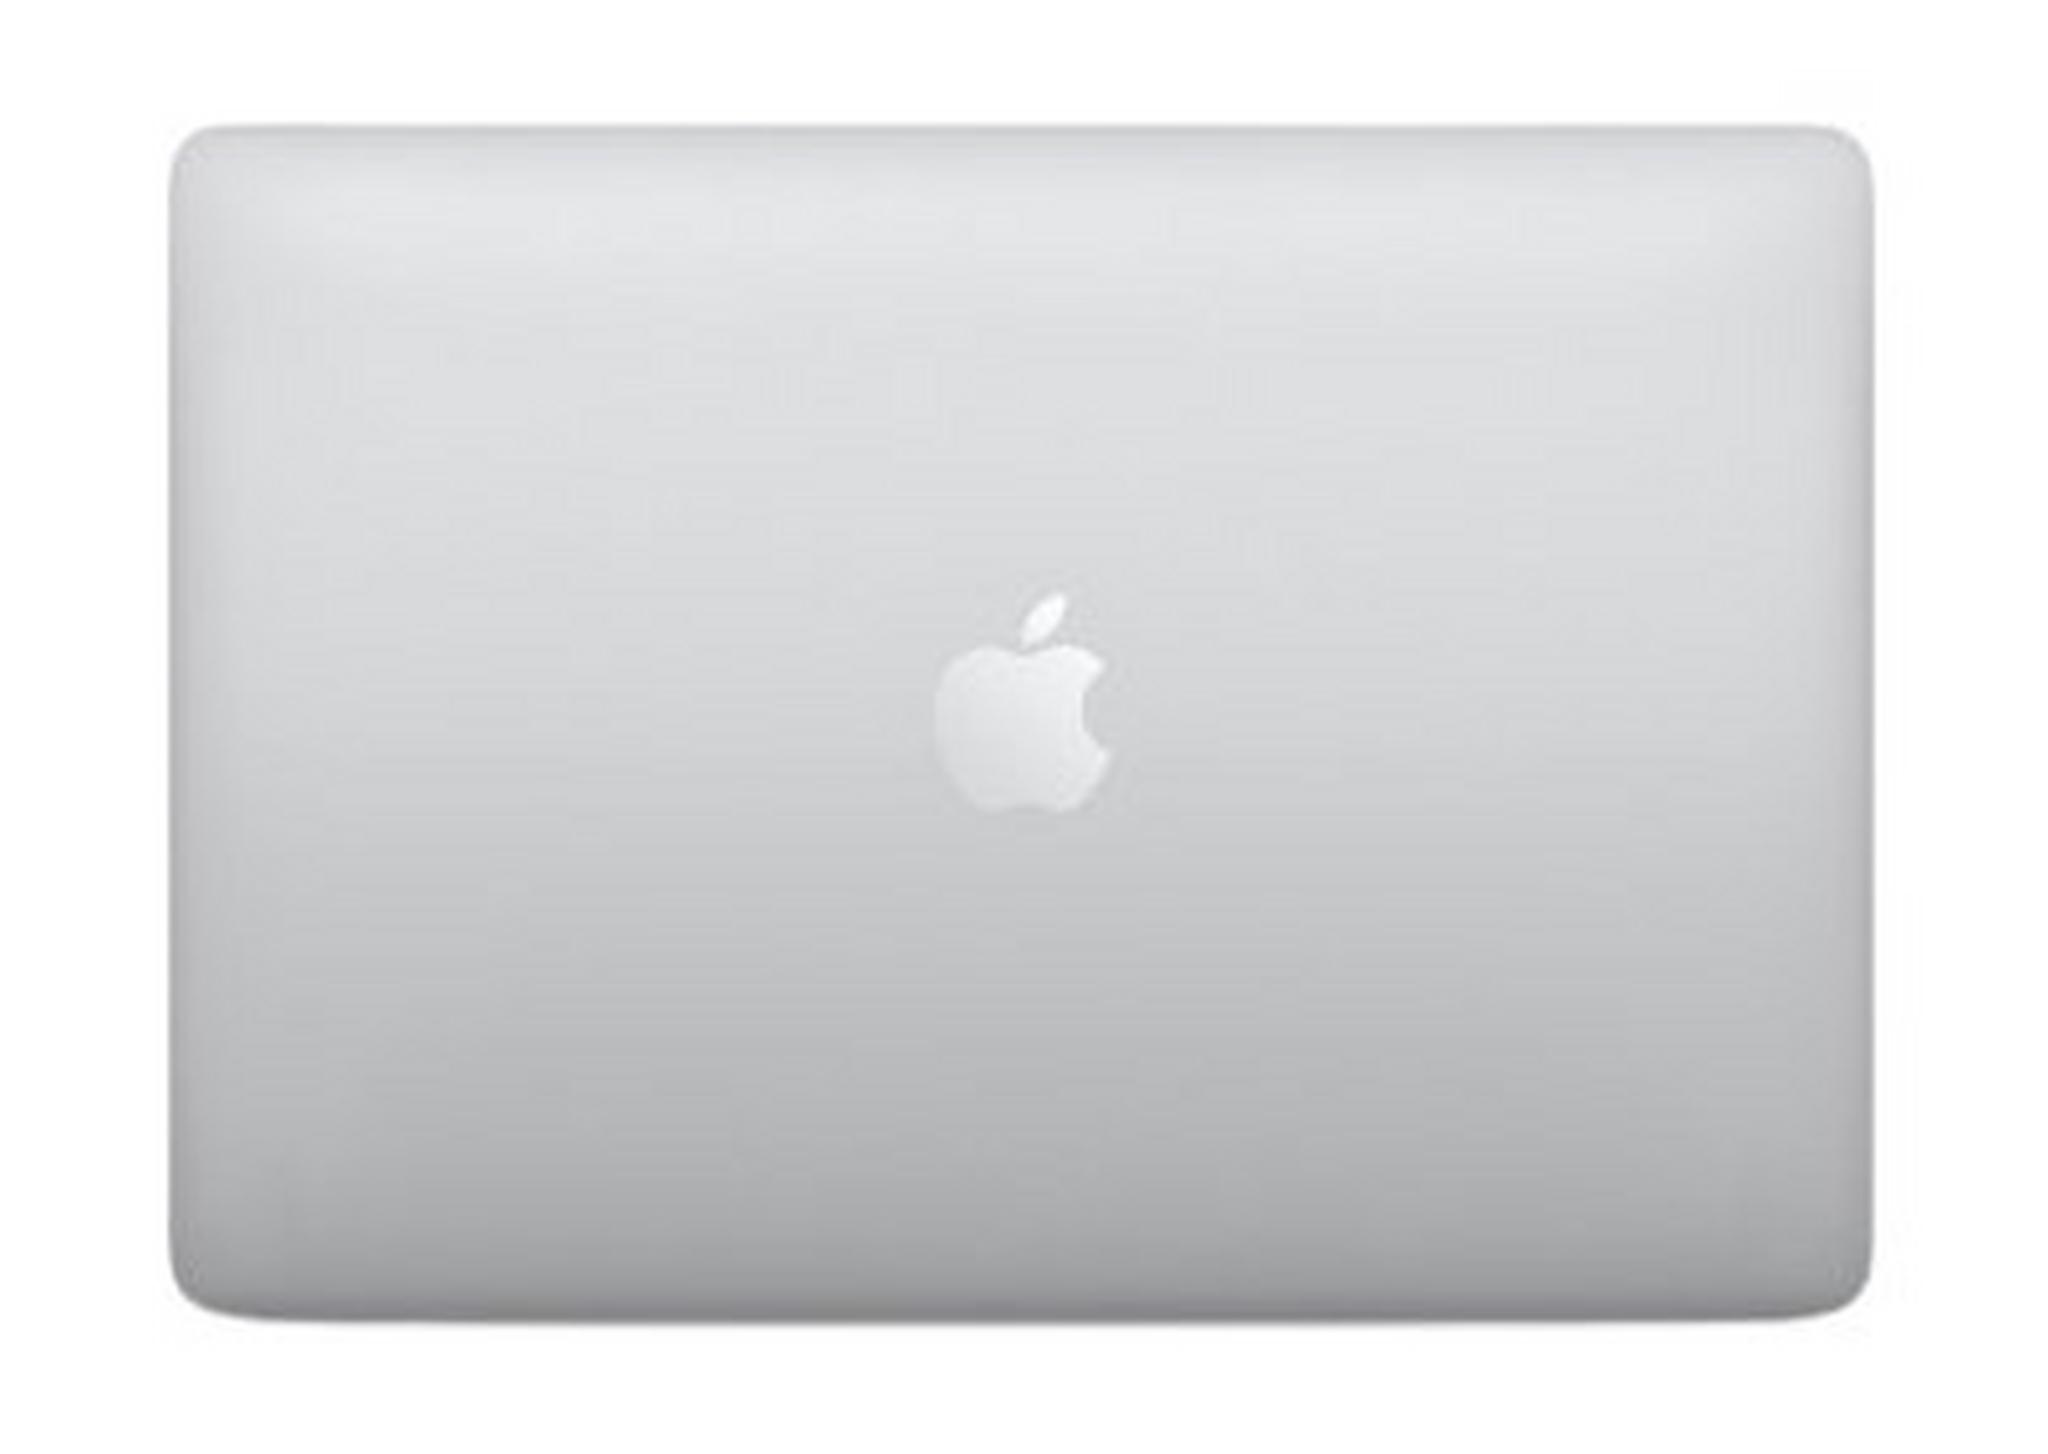 Apple Macbook Pro 10th Gen Core i5 16GB RAM 1TB SSD 13.3-inch Laptop (MWP82AB/A) - Silver